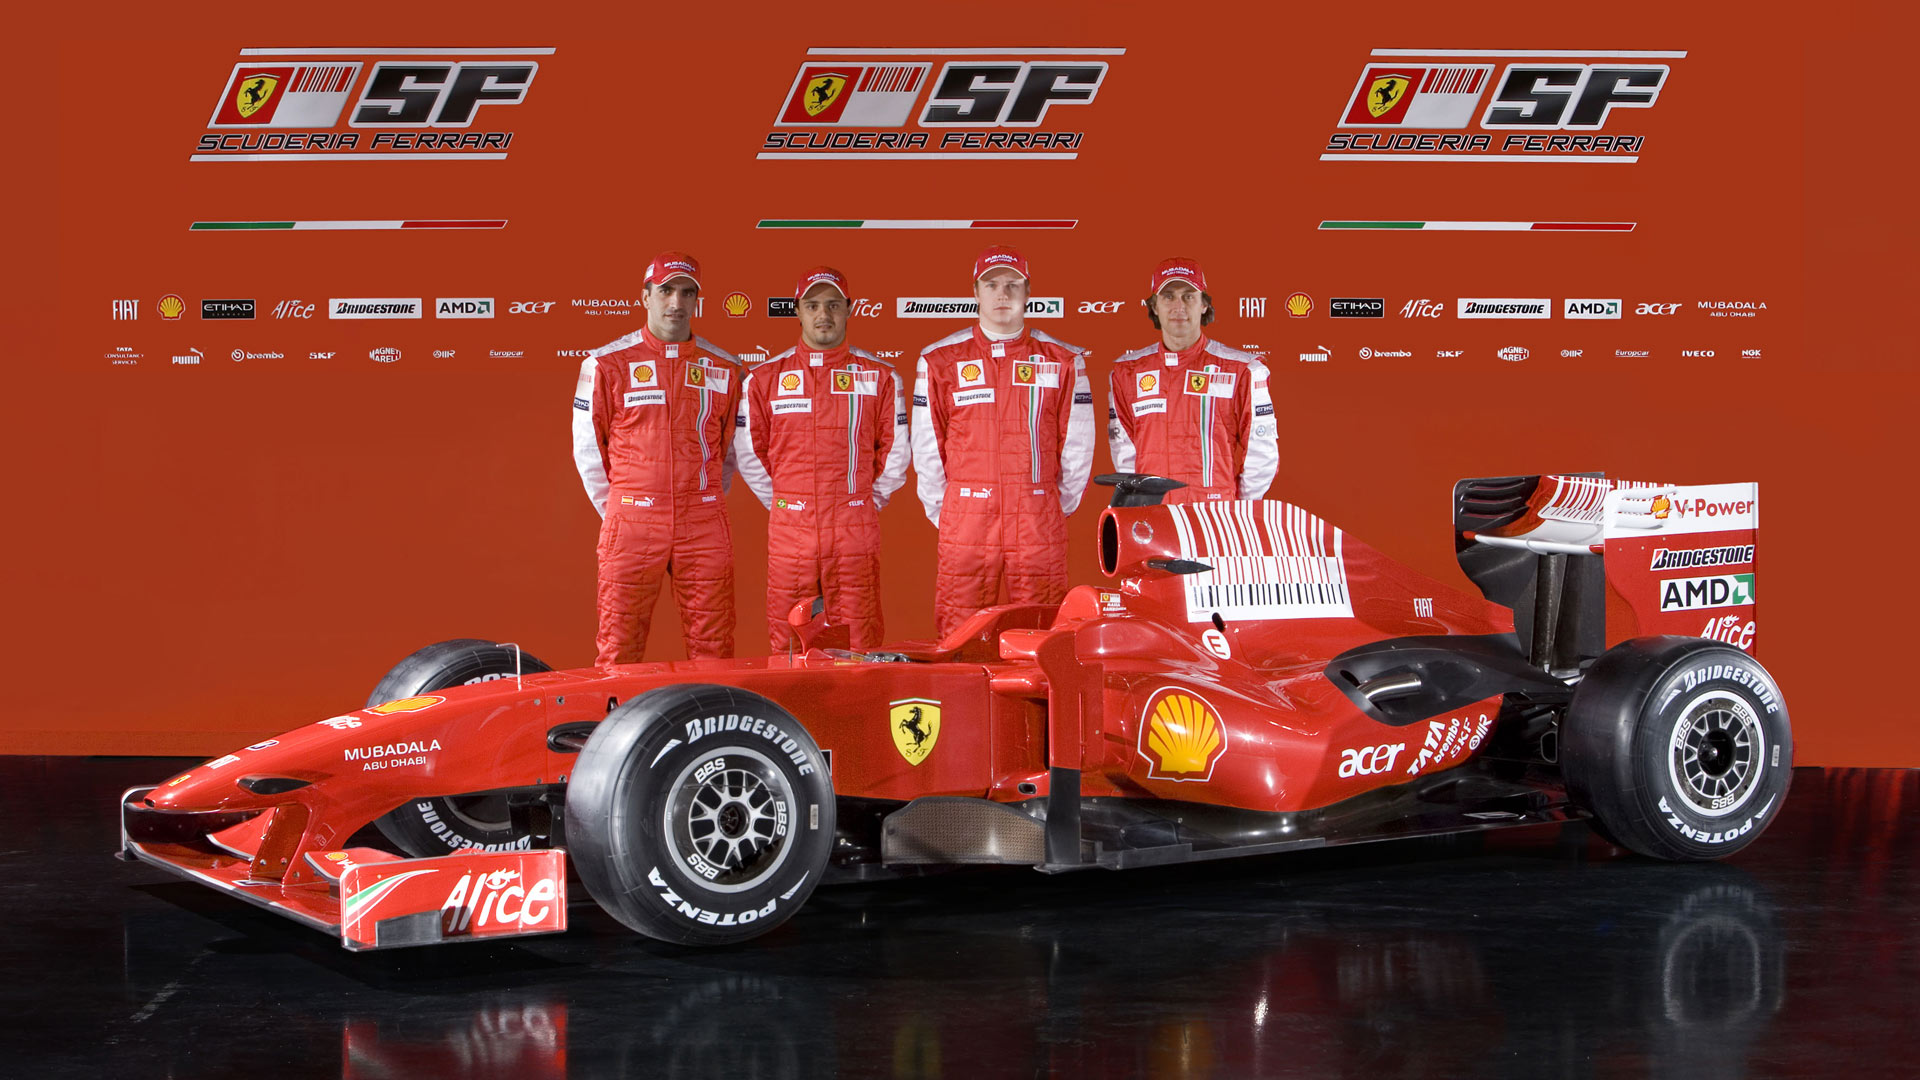 Ferrari F2012 - Wikipedia